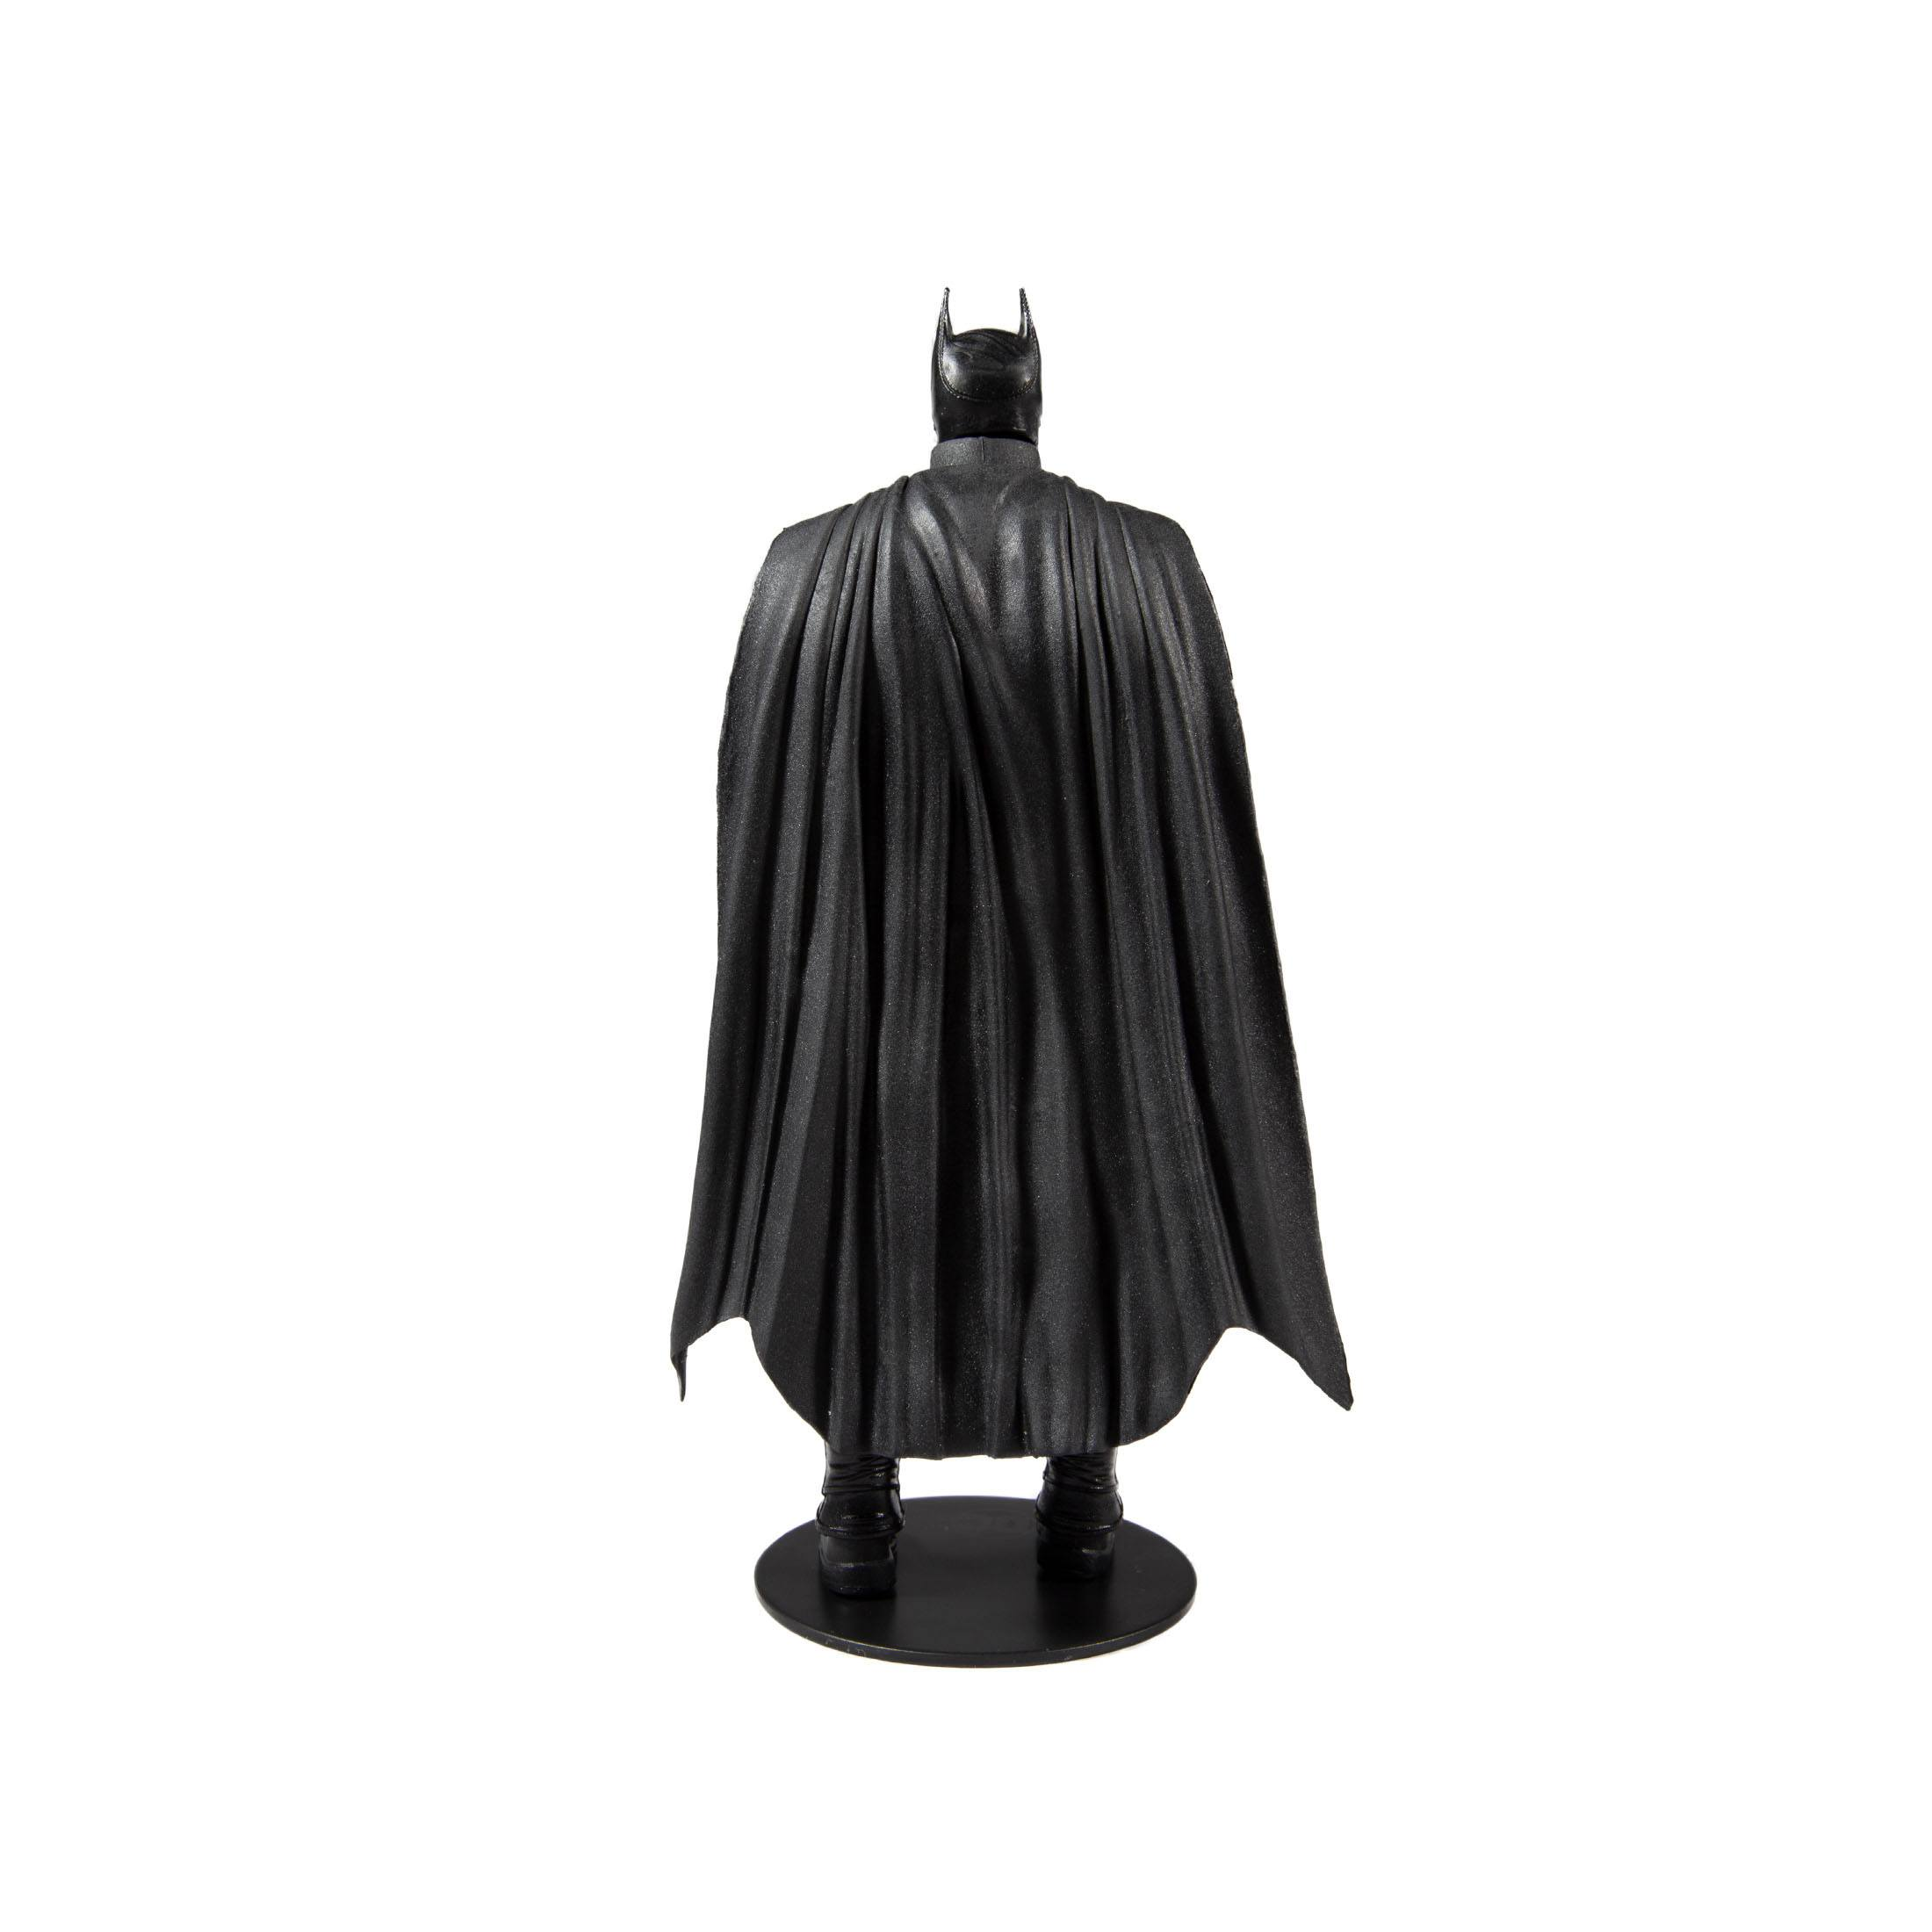 Figur: Movie) Action DC Actionfigur TOYS MCFARLANE 18 cm Multiverse Batman (Batman